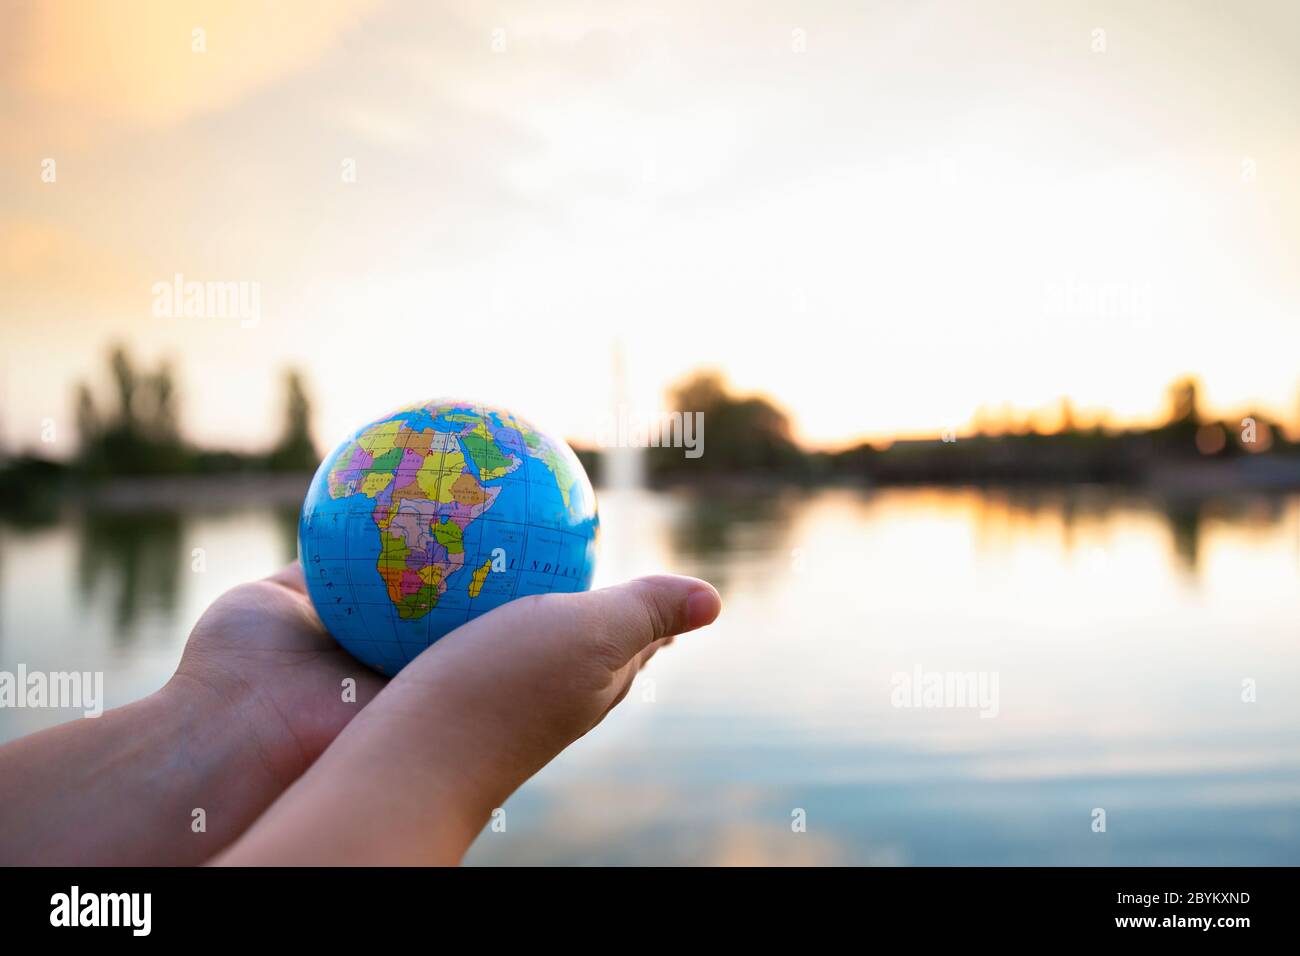 Dettaglio delle mani della persona che tiene una piccola palla del mondo di fronte ad un lago al tramonto. Messa a fuoco selettiva. Concetto di viaggio e cura del pianeta. Foto Stock